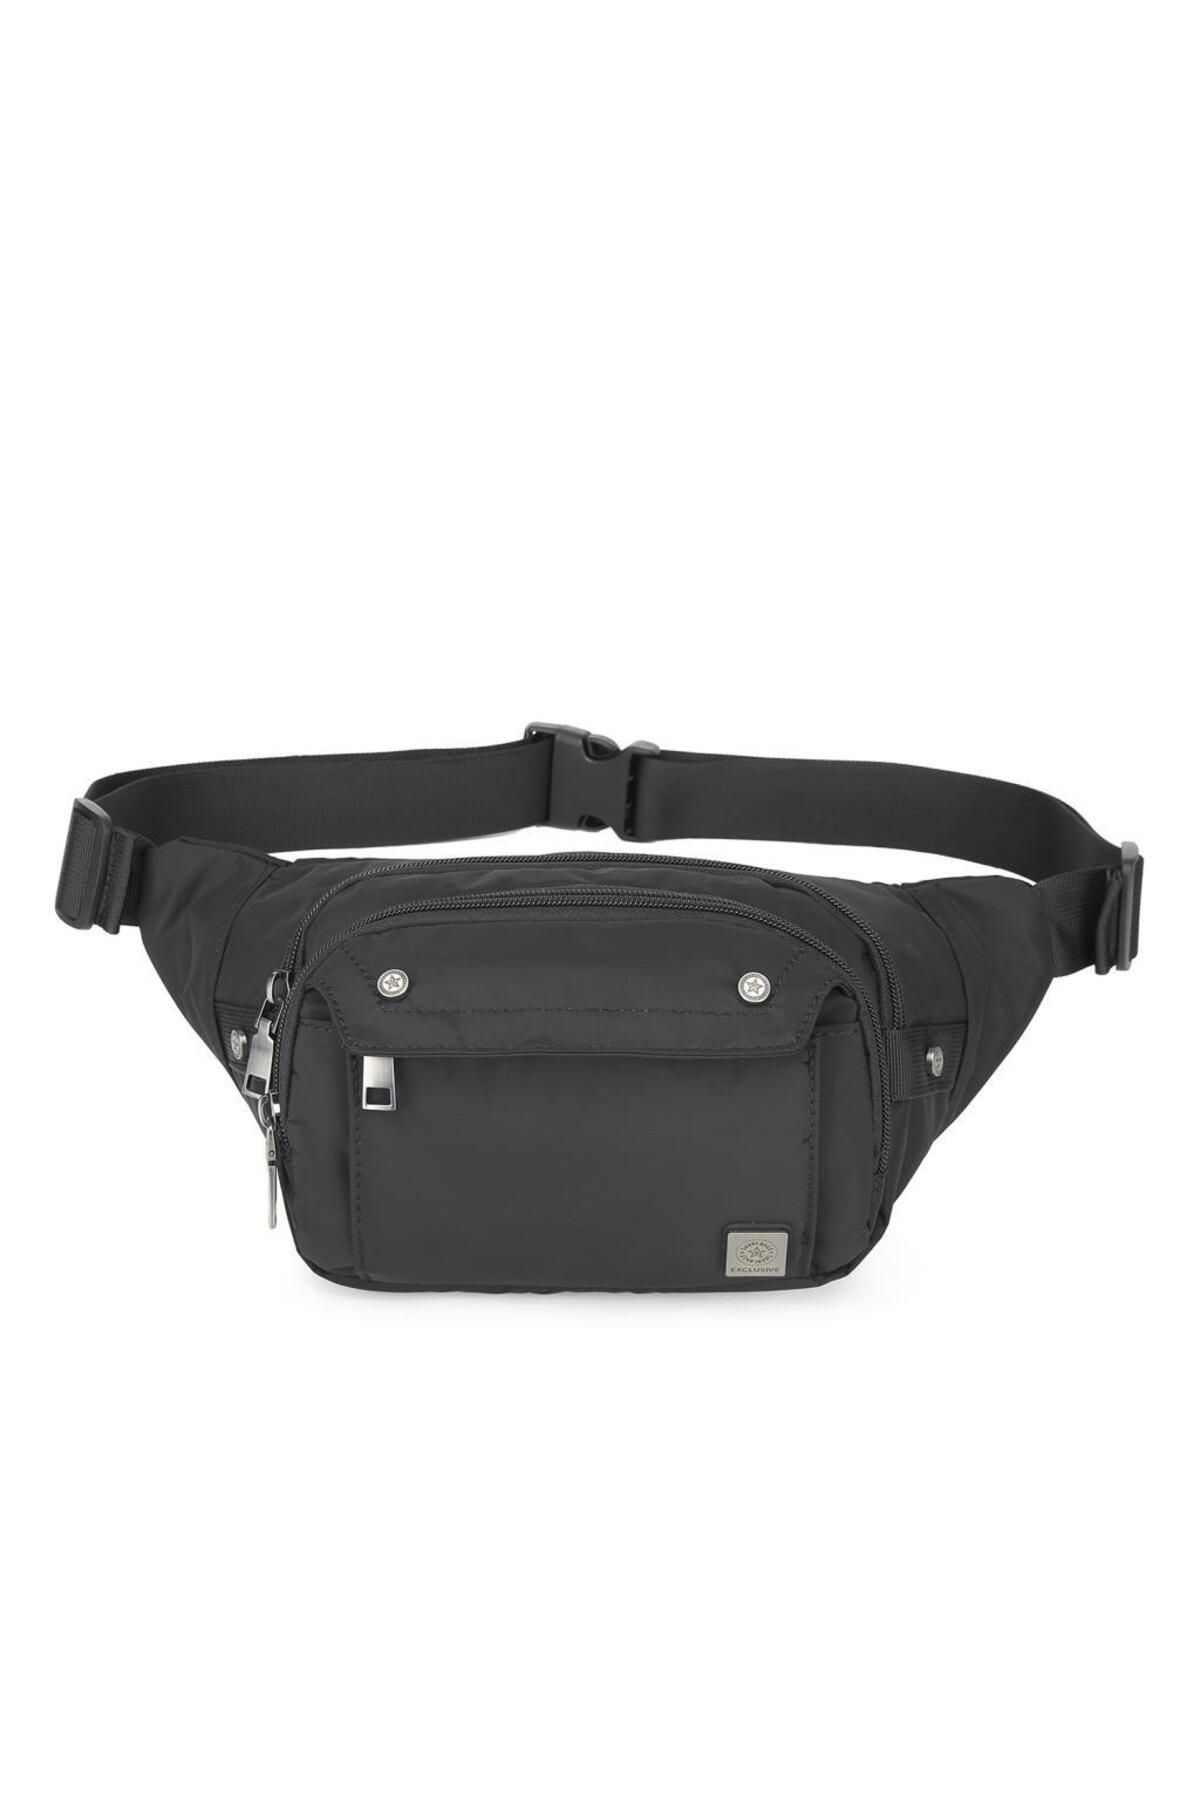 Smart Bags Exclusive Serisi Uniseks Bodybag Bel Çantası Smart Bags 8705